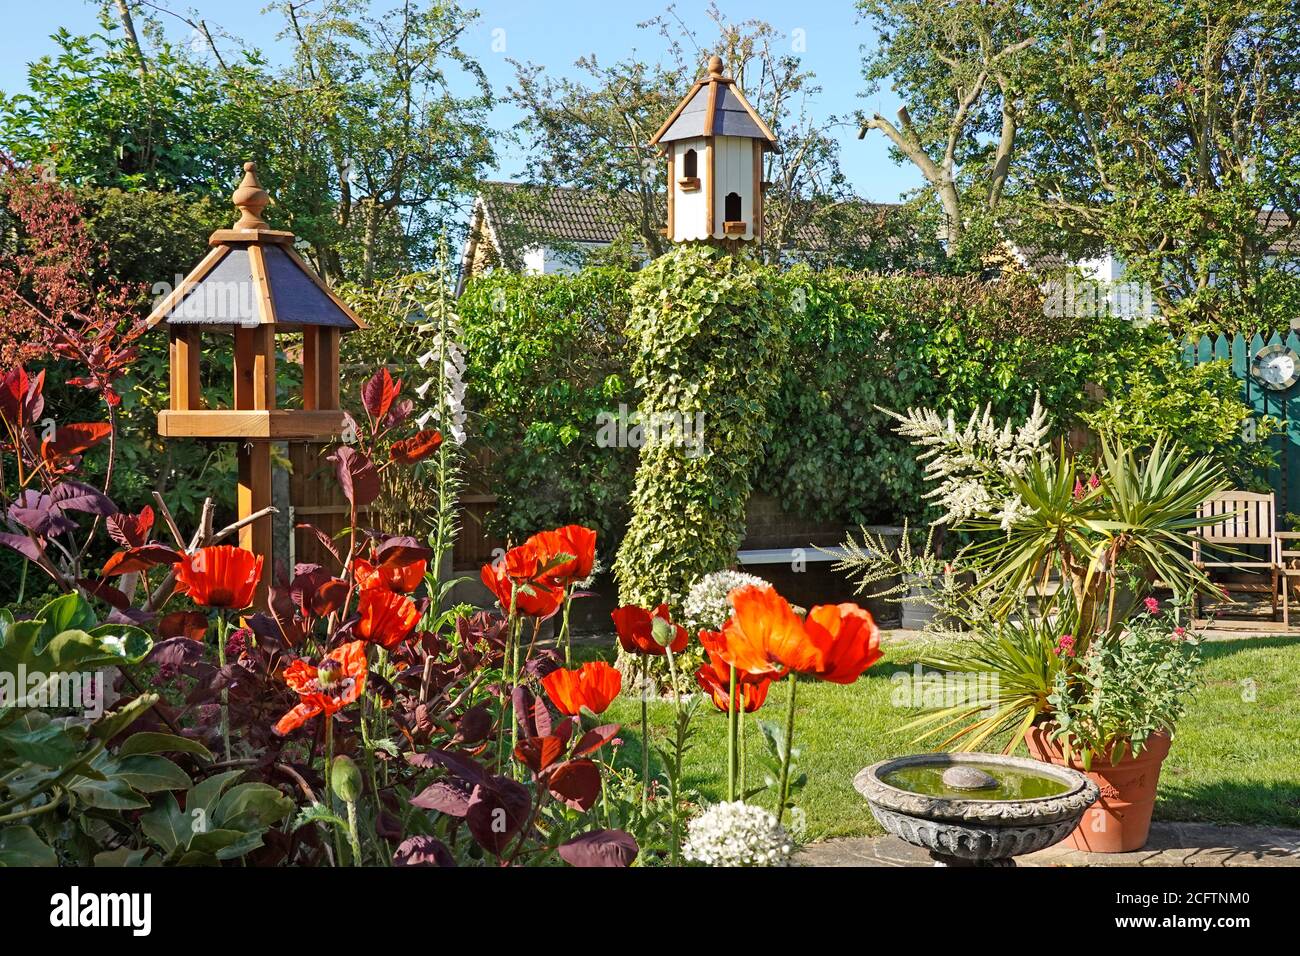 Englisch Sommer Landhaus zurück Garten Mischung Stauden Orientalischen Mohnblumen Allium Alstroemeria Dianthus & Cordyline Pflanzen in Blüte England Großbritannien Stockfoto